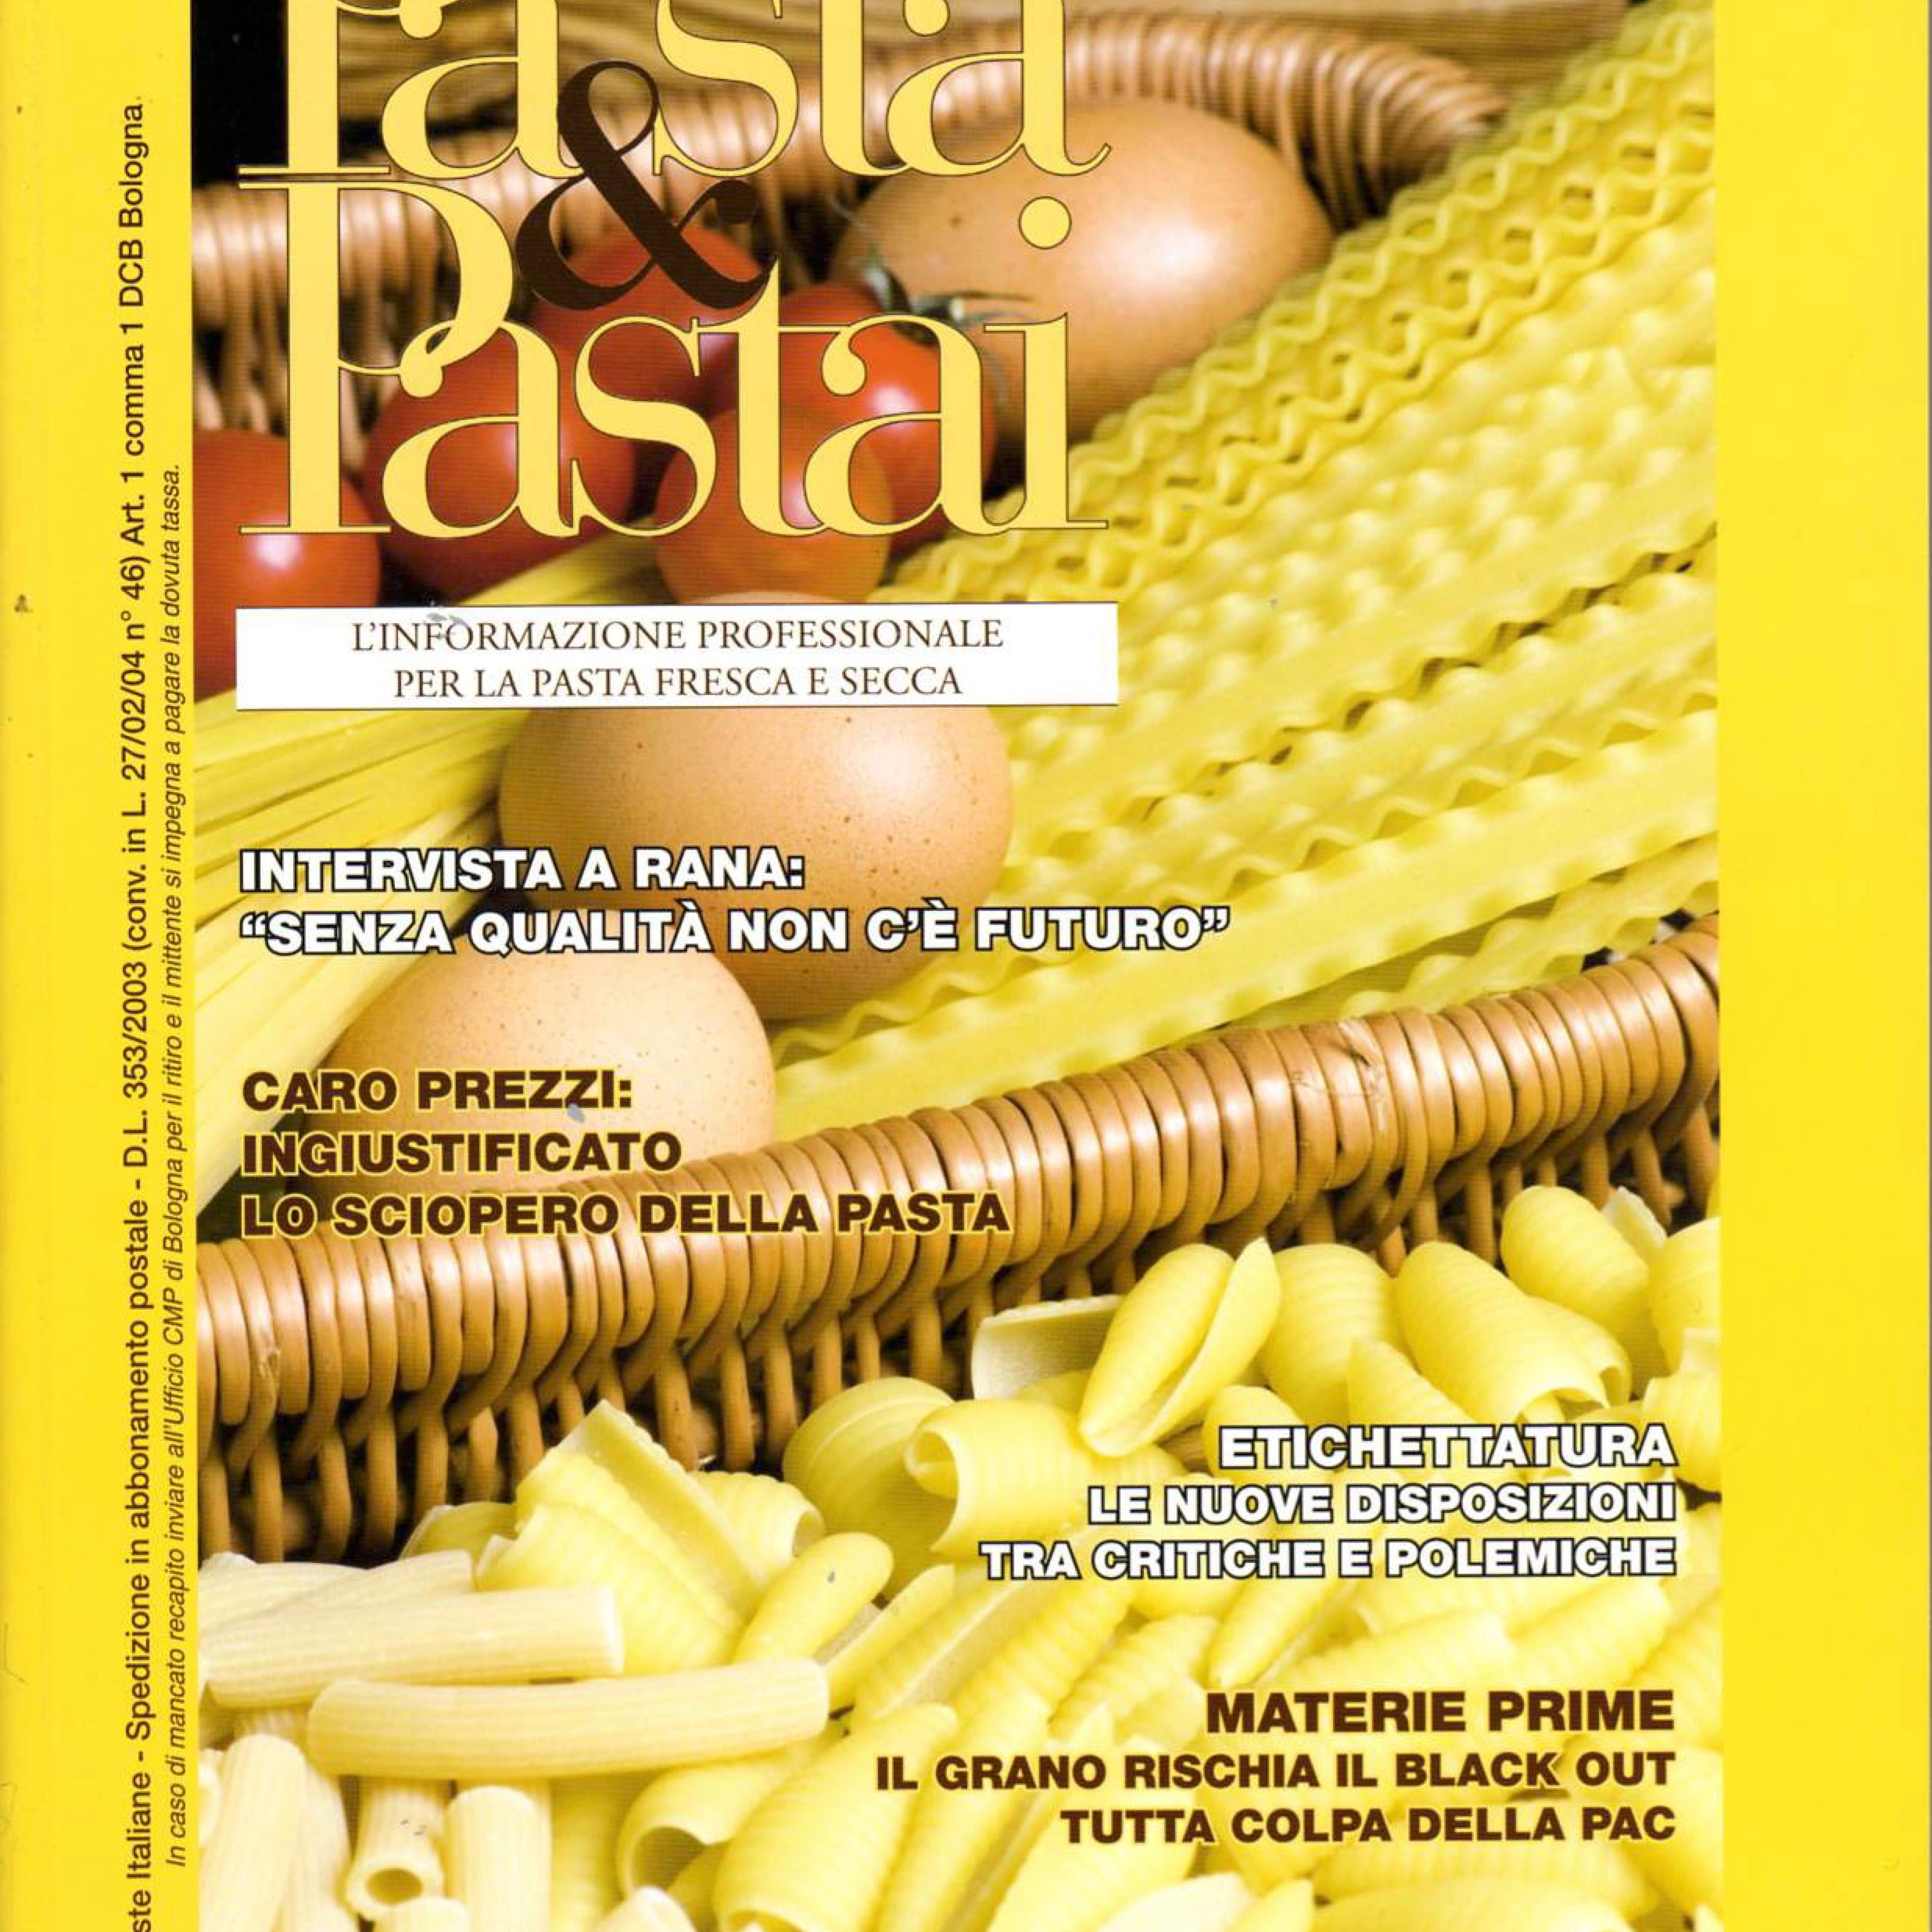 Pasta&Pastai: l’intervista di Giovanni Fabbri